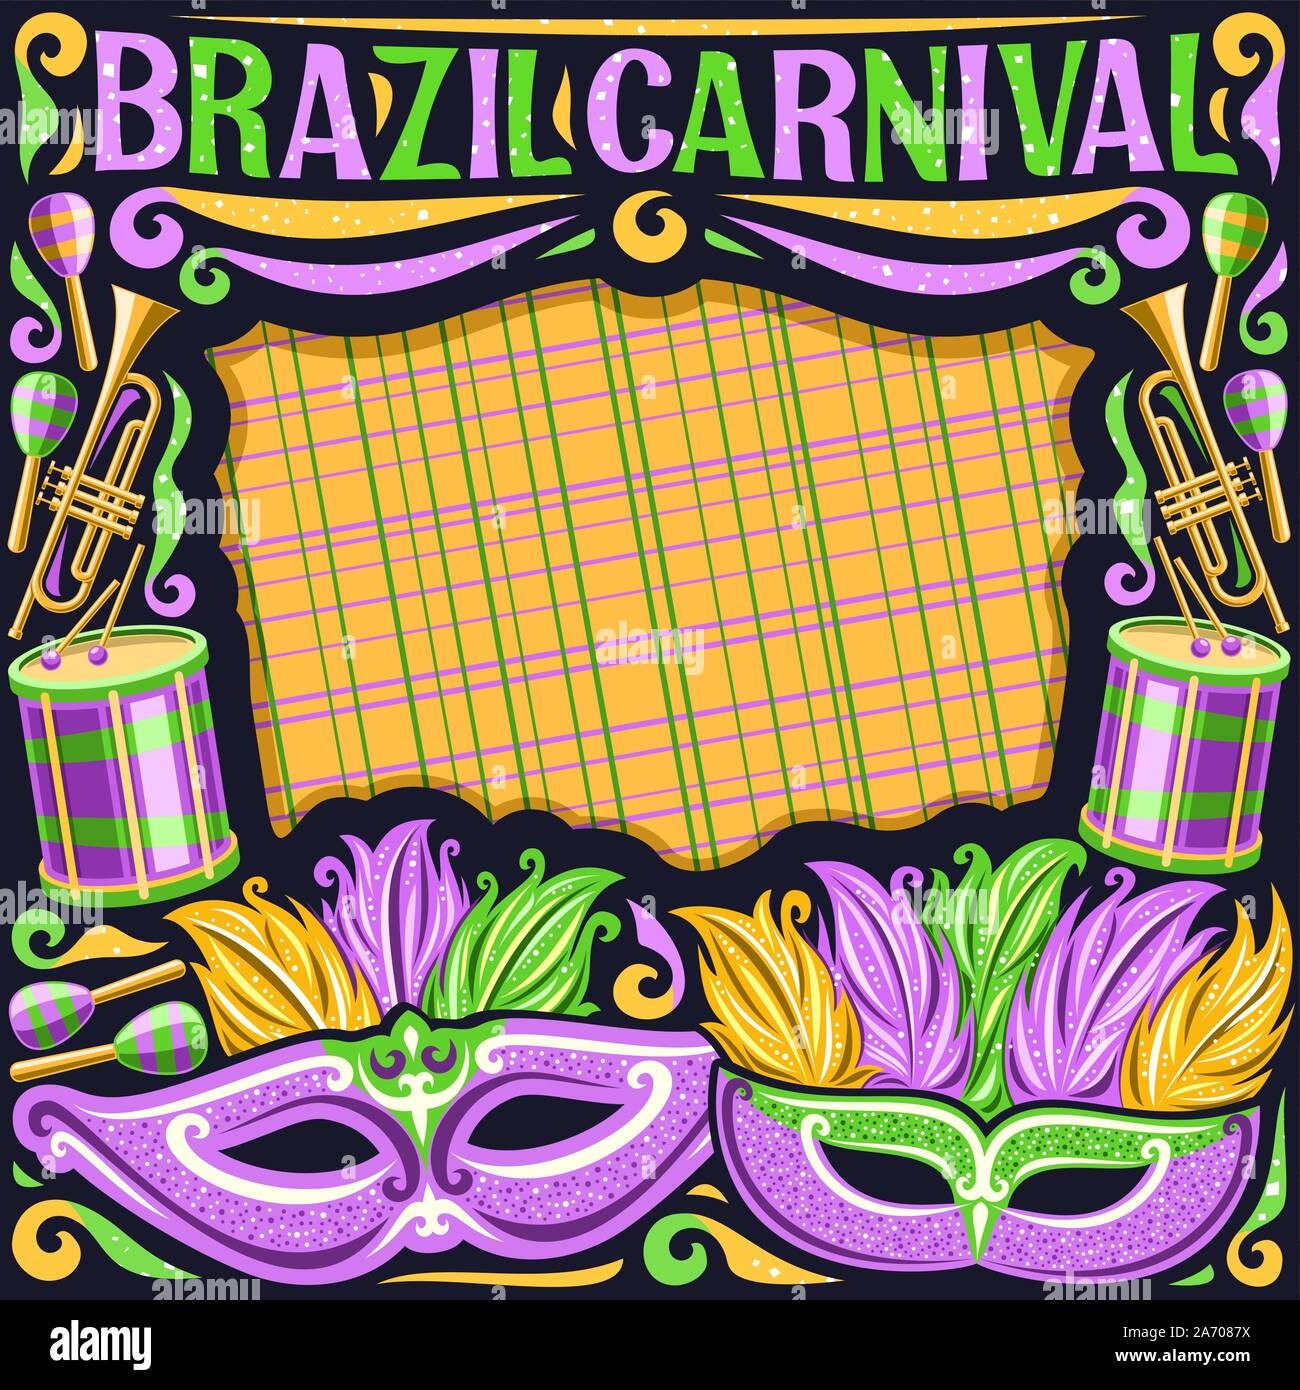 Vektor Rahmen für Brasilien Karneval mit Kopie Raum, Illustration von Purple mask, Schlagzeug mit Trommelstöcken, Layout für Karneval in Rio de Janeiro, original Stock Vektor